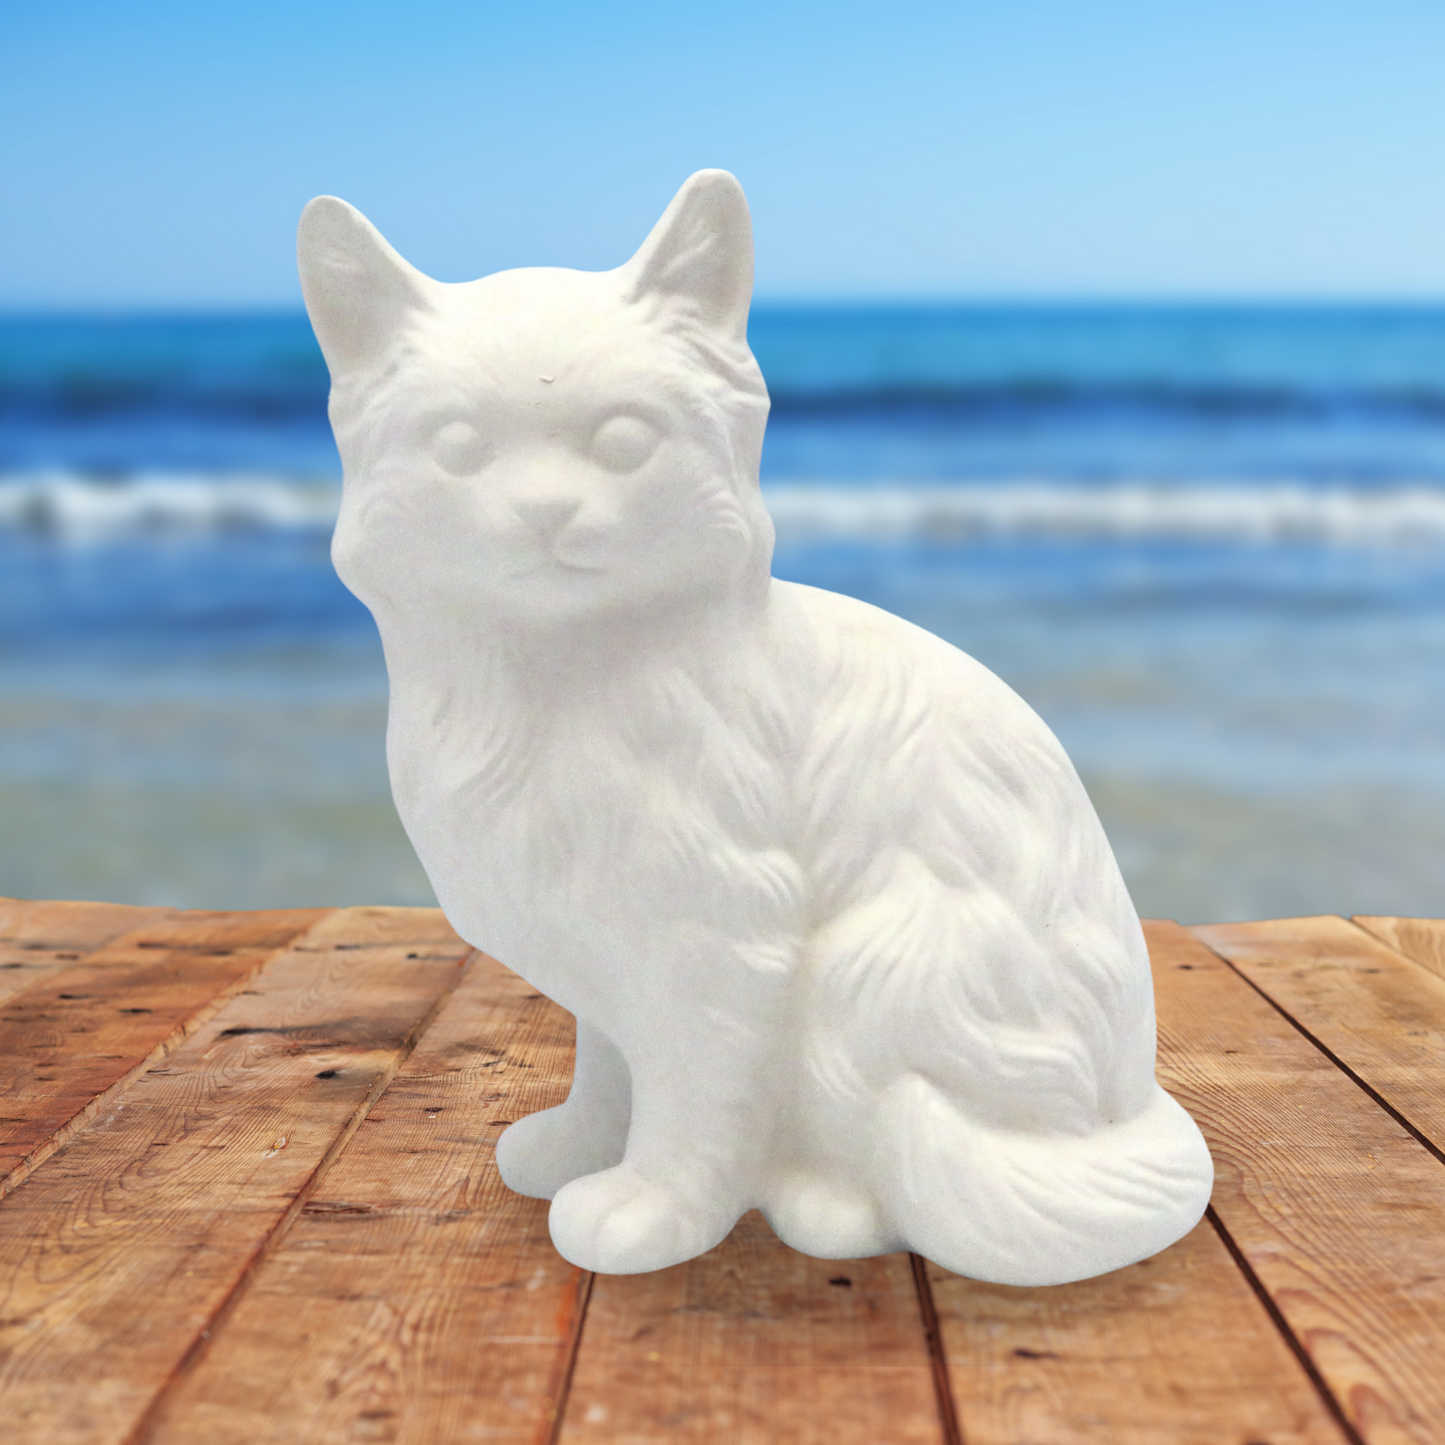 Unpainted Ceramic Bisque Cat Figurine / Cat Statue / Bisqueware / Ceramics to Paint / Paintable Ceramics / Cat Lover Gift / Cat Decor